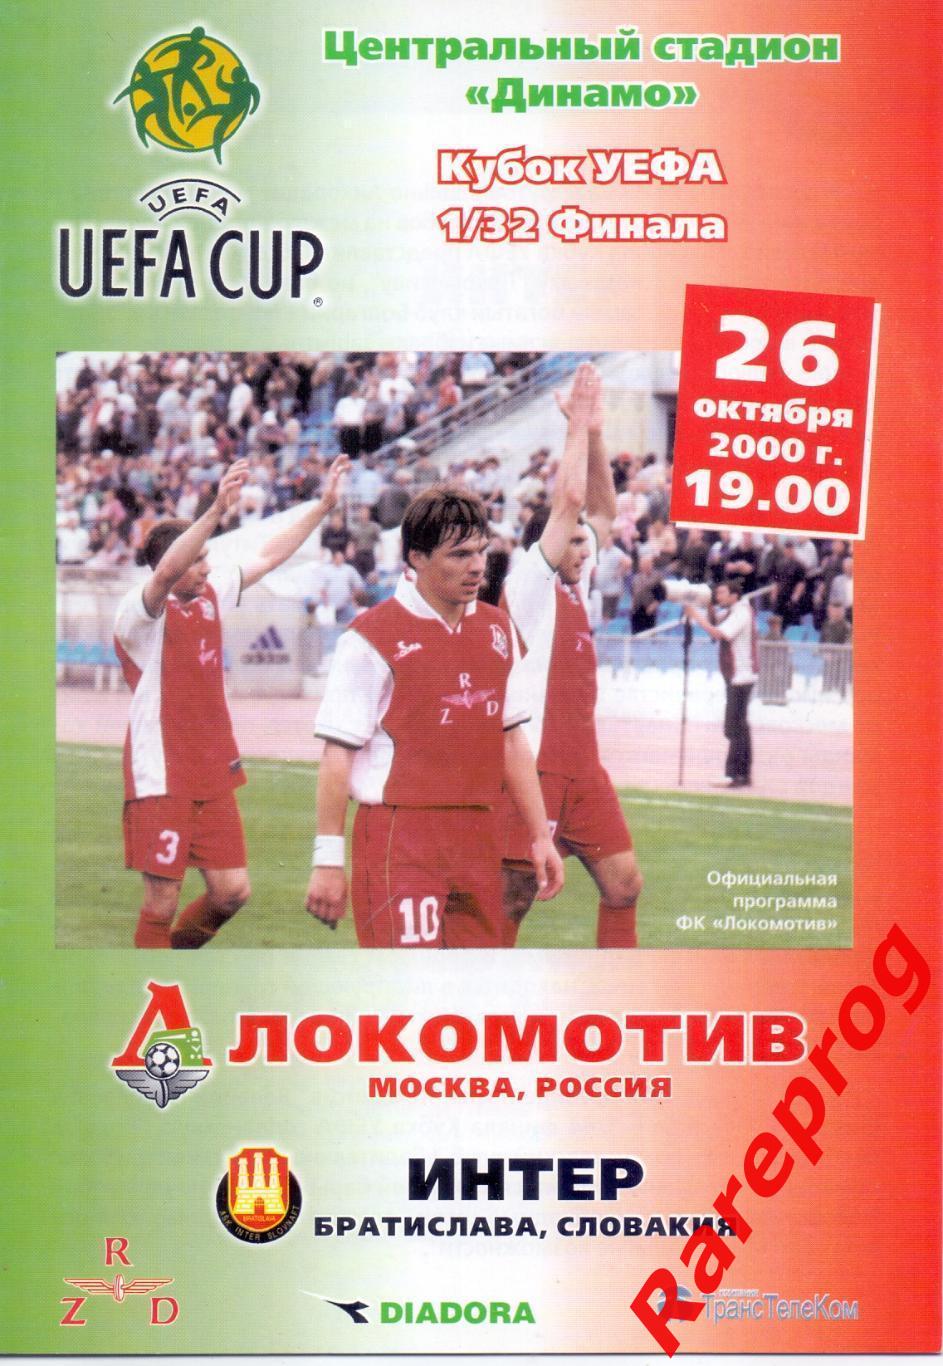 Локомотив Москва Россия - Интер Словакия 2000 кубок УЕФА